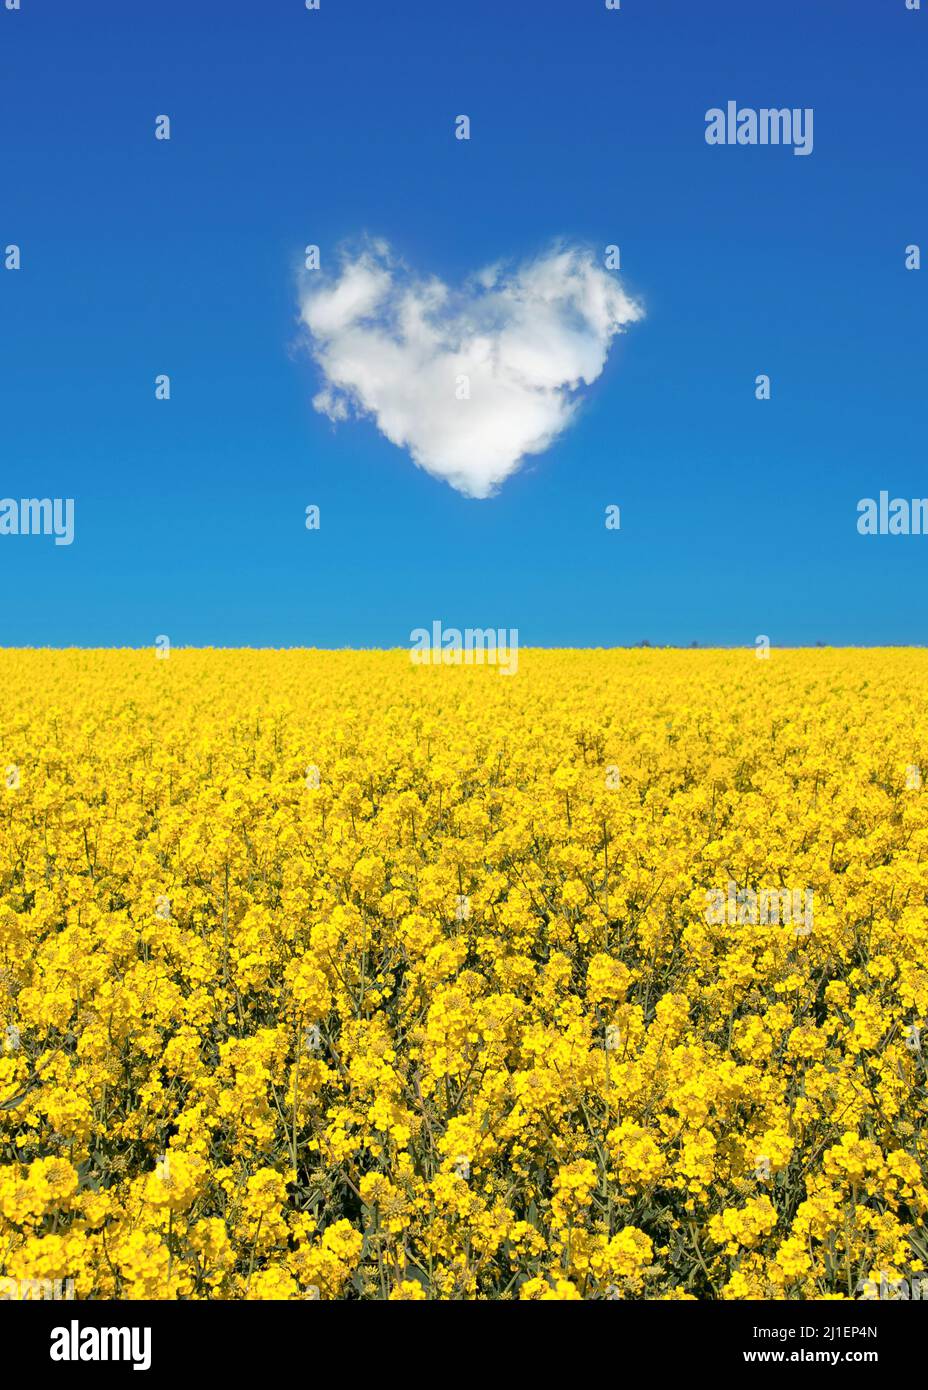 Frieden für die Ukraine, gelbes Feld und blauer Himmel mit einer Herzwolke, ukrainische Flaggen-Farben, Ukraine-Kriegsunterstützungskonzept Stockfoto